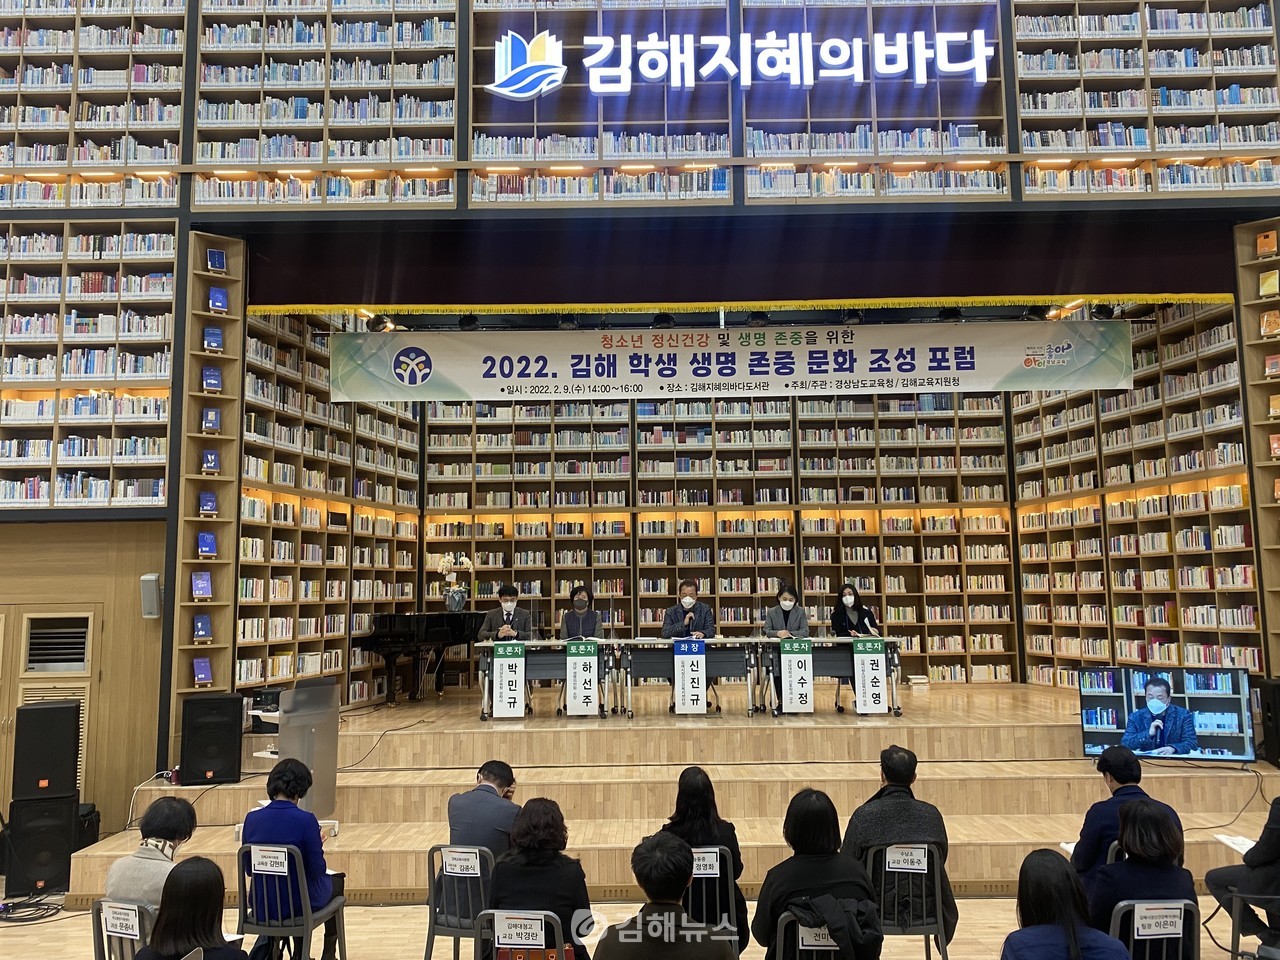 김해교육지원청은 지난 9일 '청소년 정신건강 및 생명 존중 강화 방안' 포럼을 개최했다. 